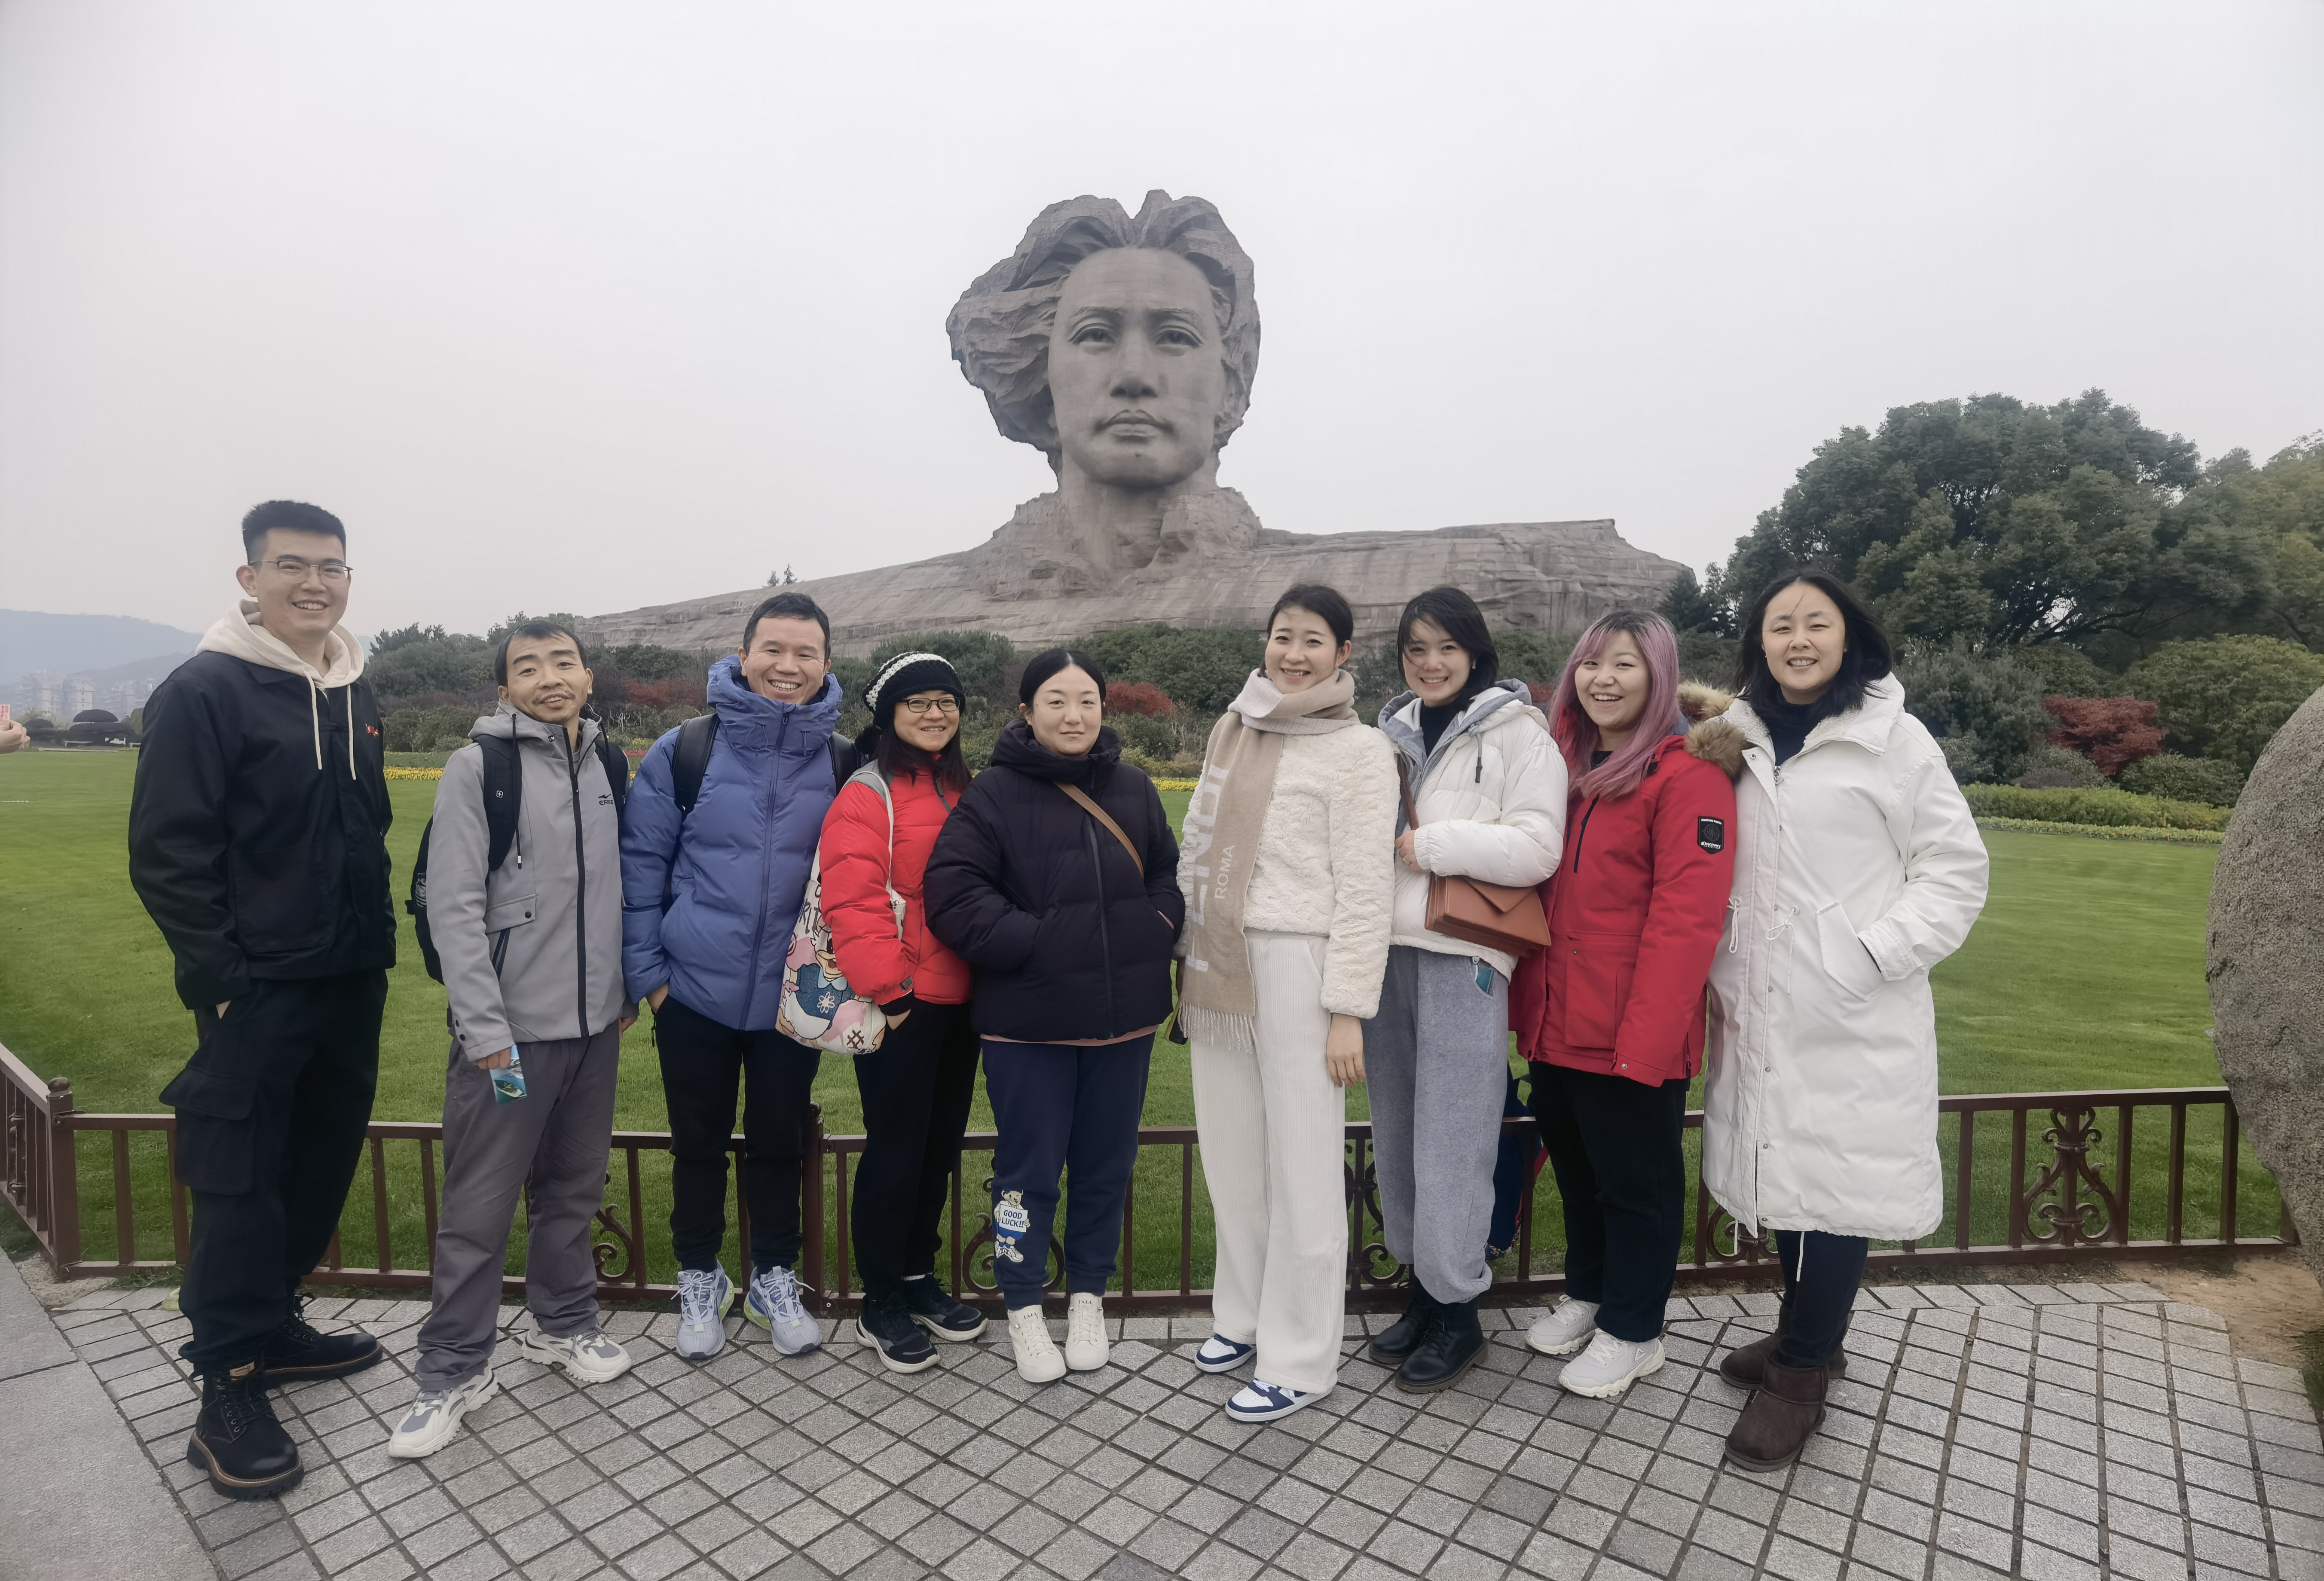 El viatge de formació d'equips de Chiswear a Changsha es va concloure amb èxit